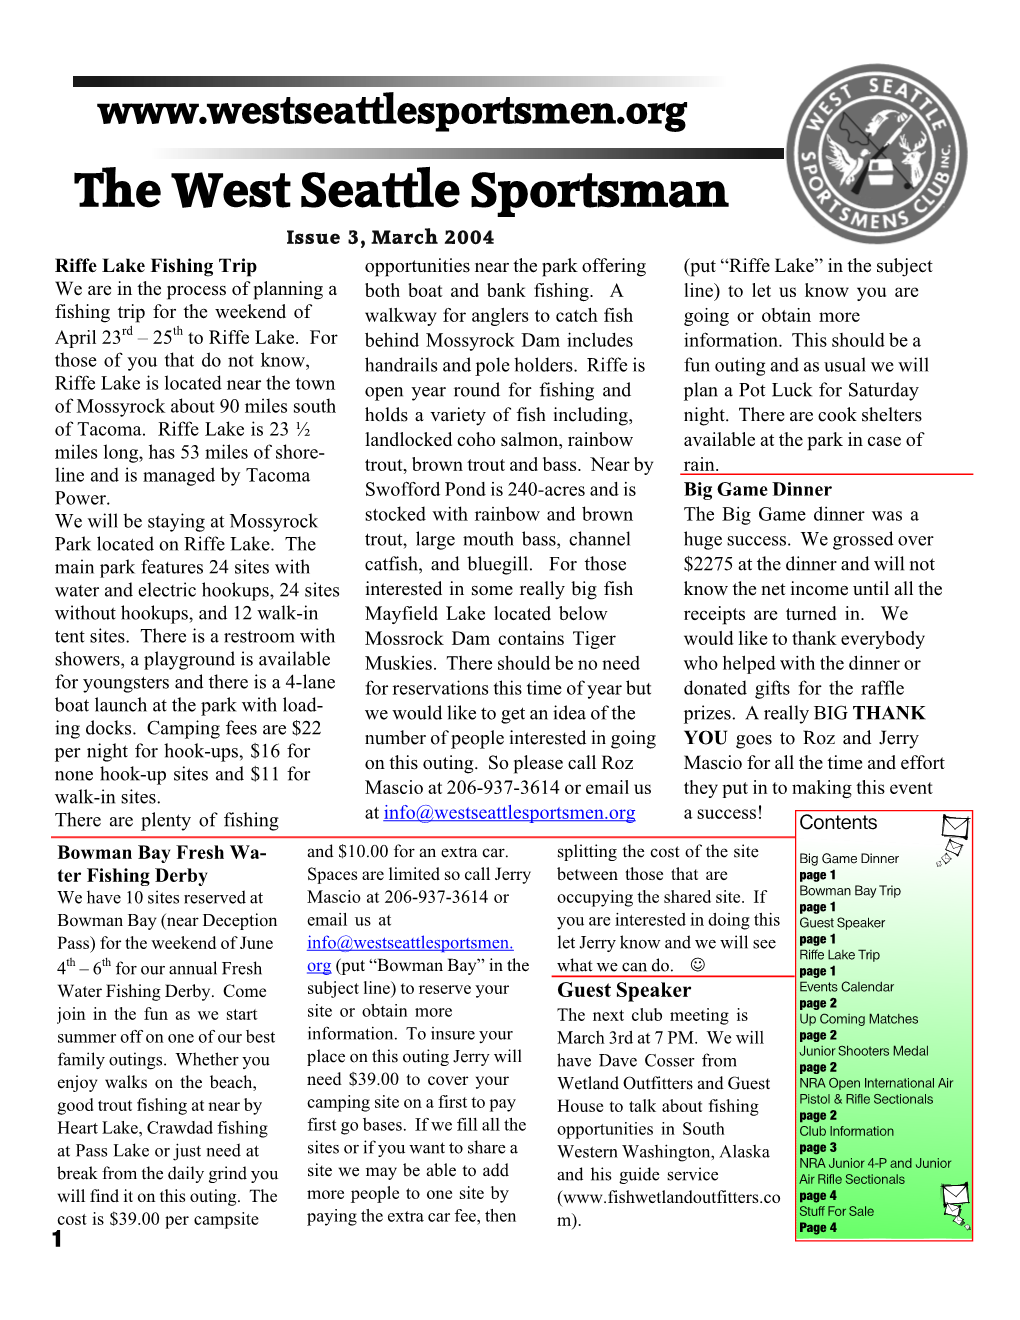 The West Seattle Sportsman